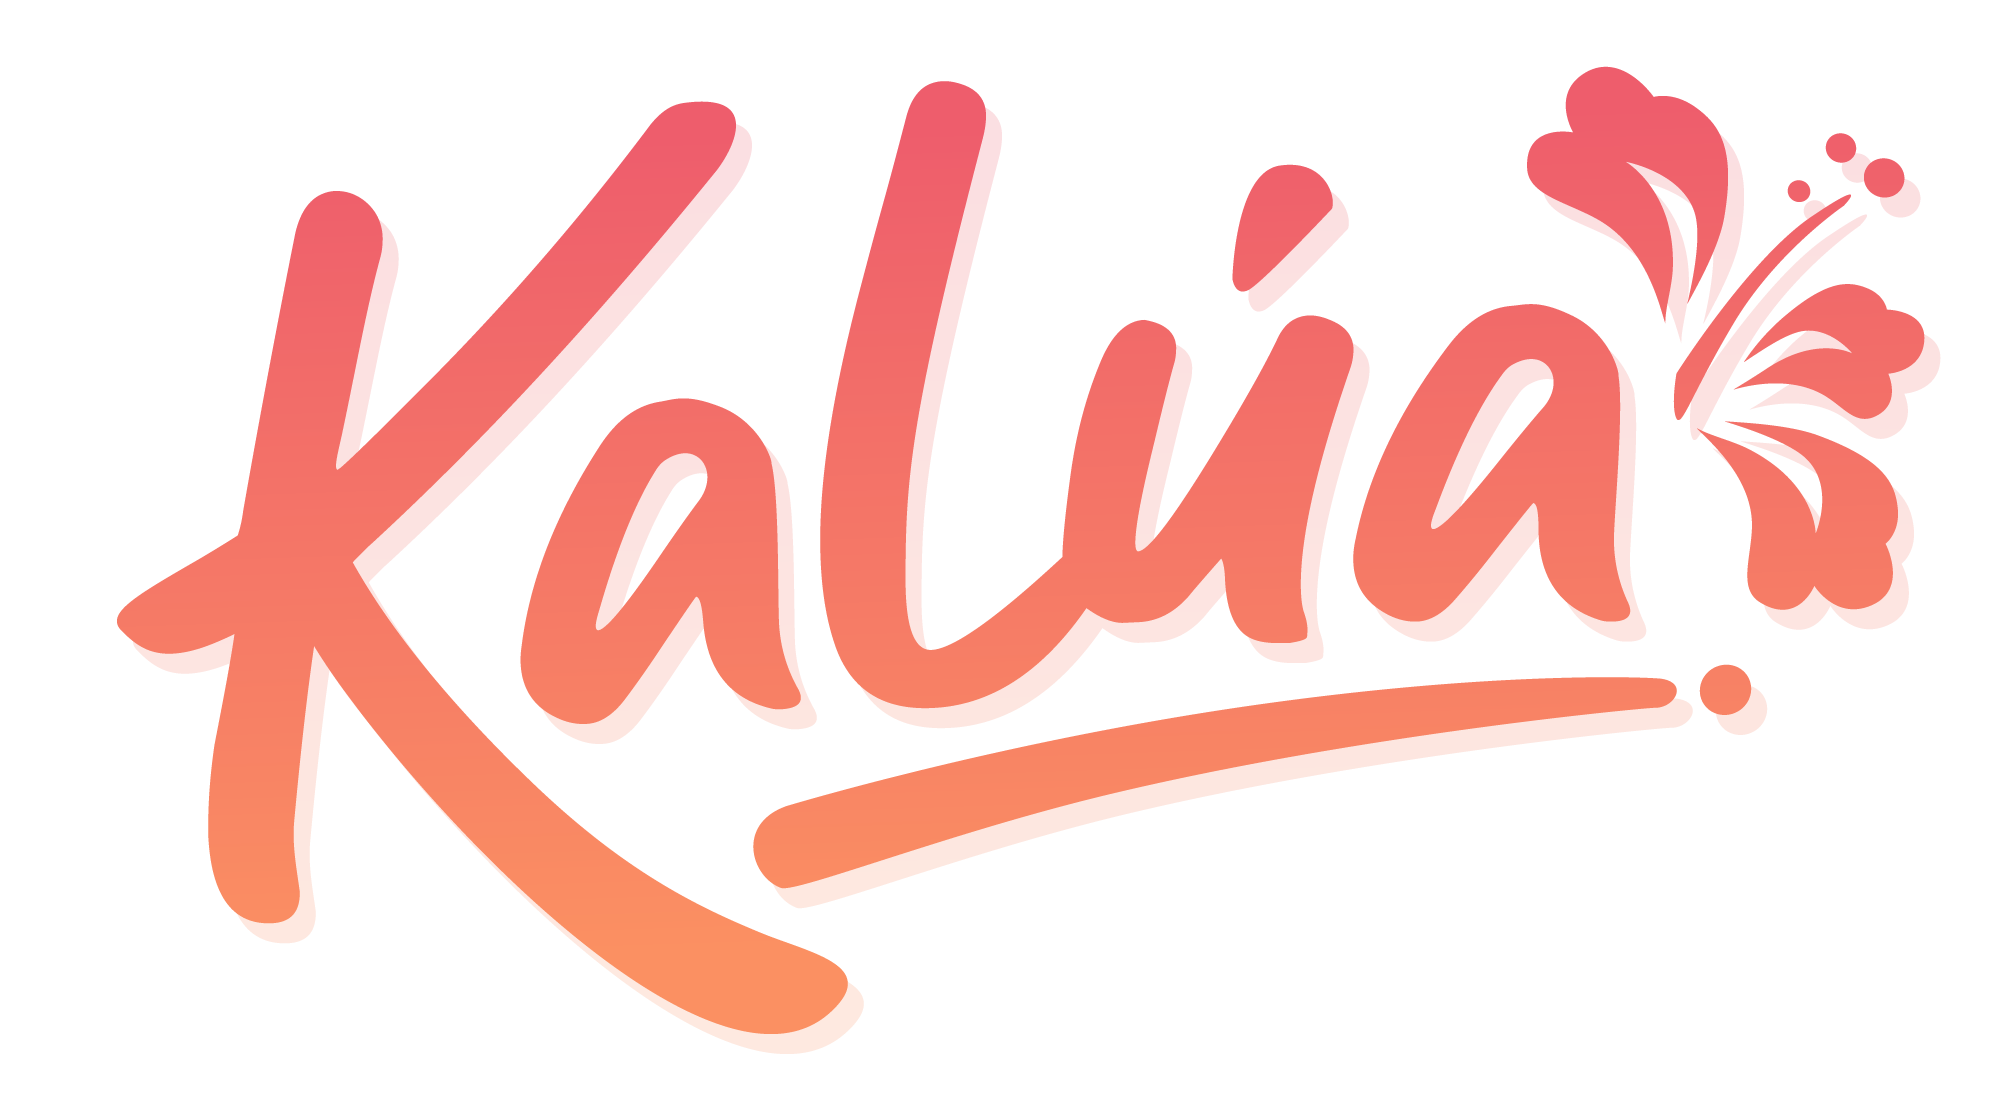 KaLua